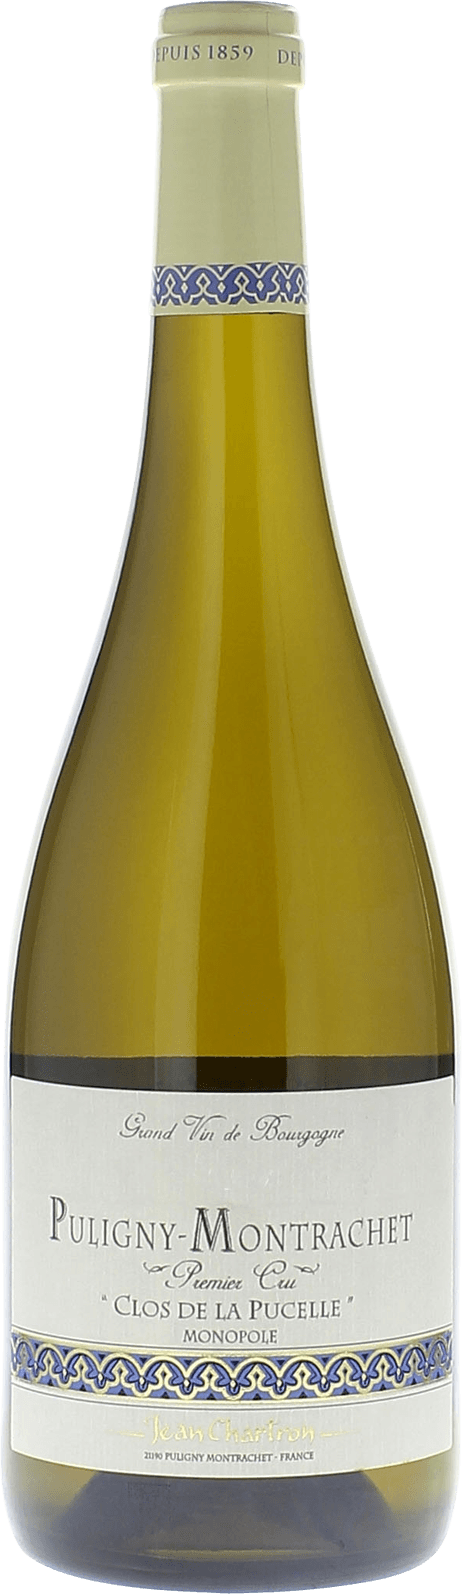 Puligny montrachet 1er cru clos de la pucelle 2017 Domaine CHARTRON Jean, Bourgogne blanc